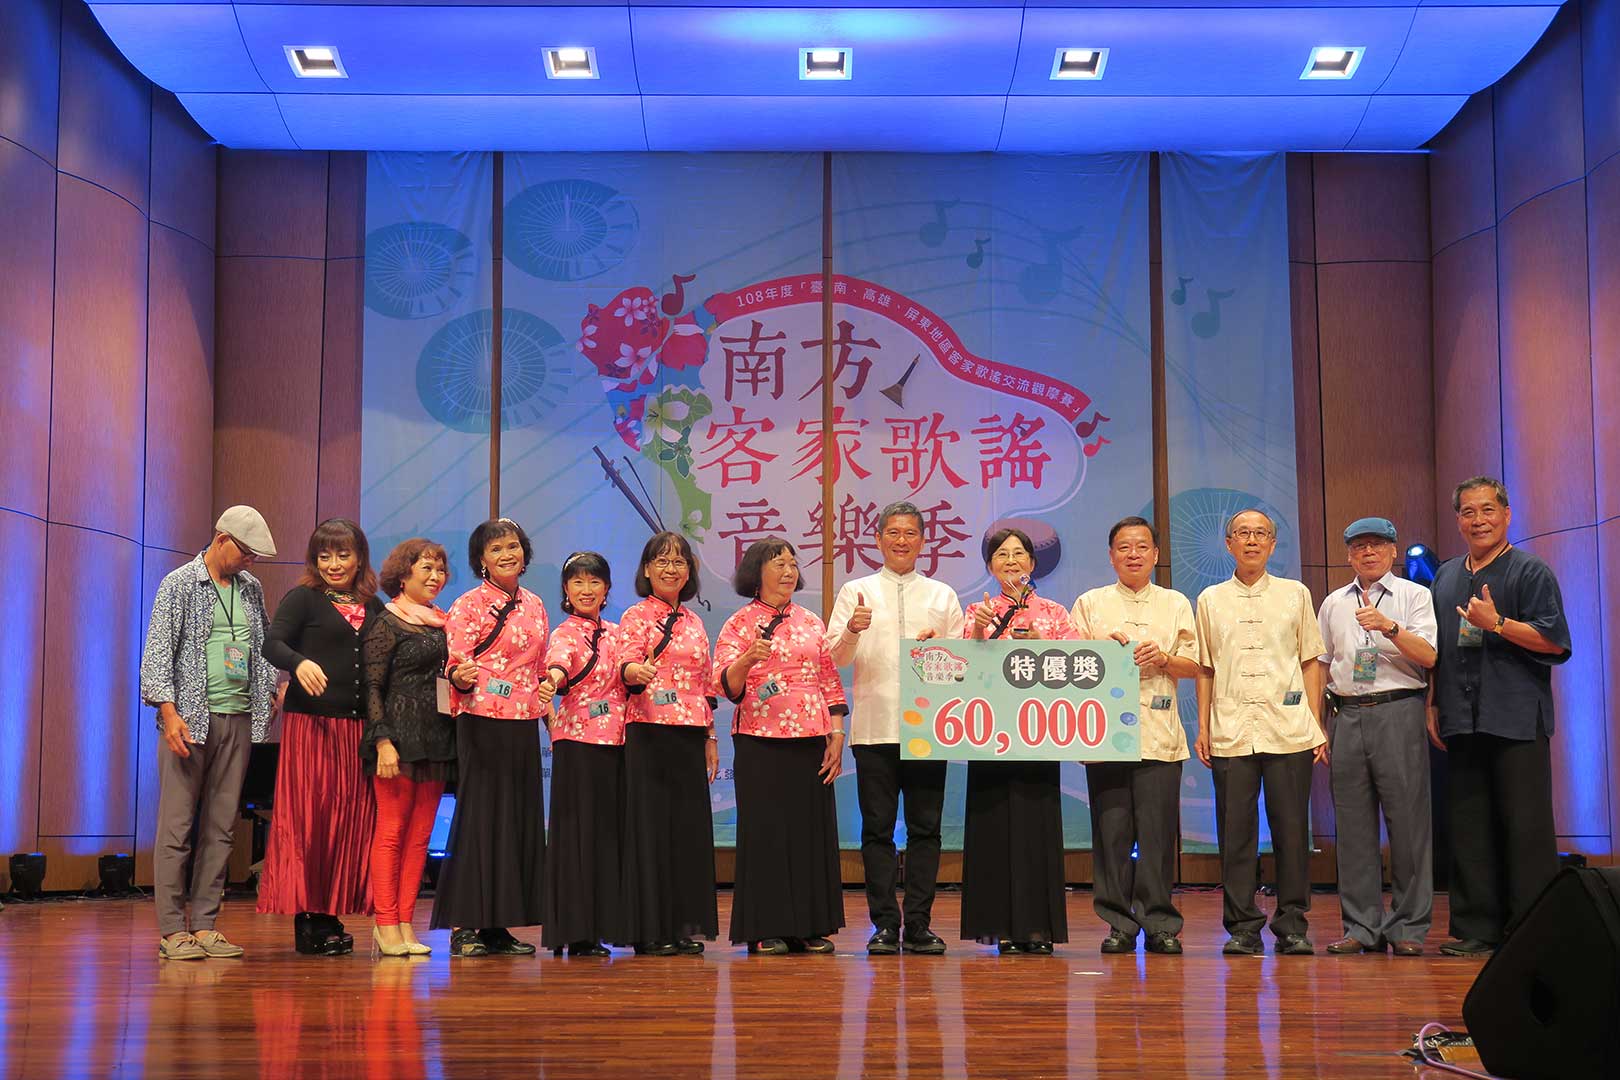 High Distinction Award granted to Yueh Kuang Shan Choral